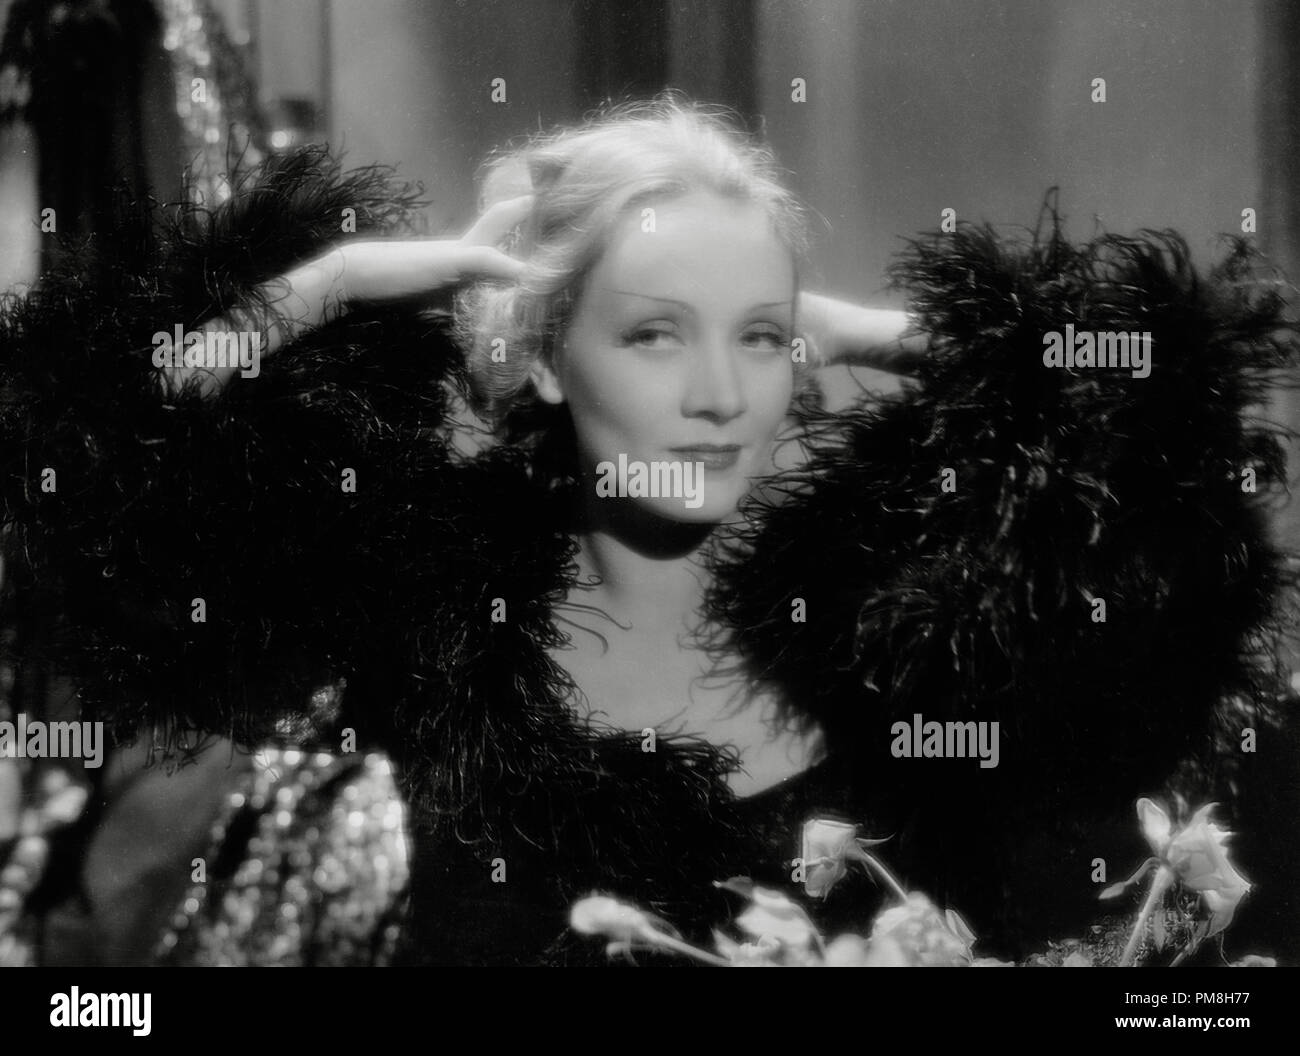 (Archivage classique du cinéma - Marlene Dietrich rétrospective) 'Shanghai Express' Marlene Dietrich 1932 Cinéma Paramount Publishers Collection de référence de dossier 31496 062THA Banque D'Images